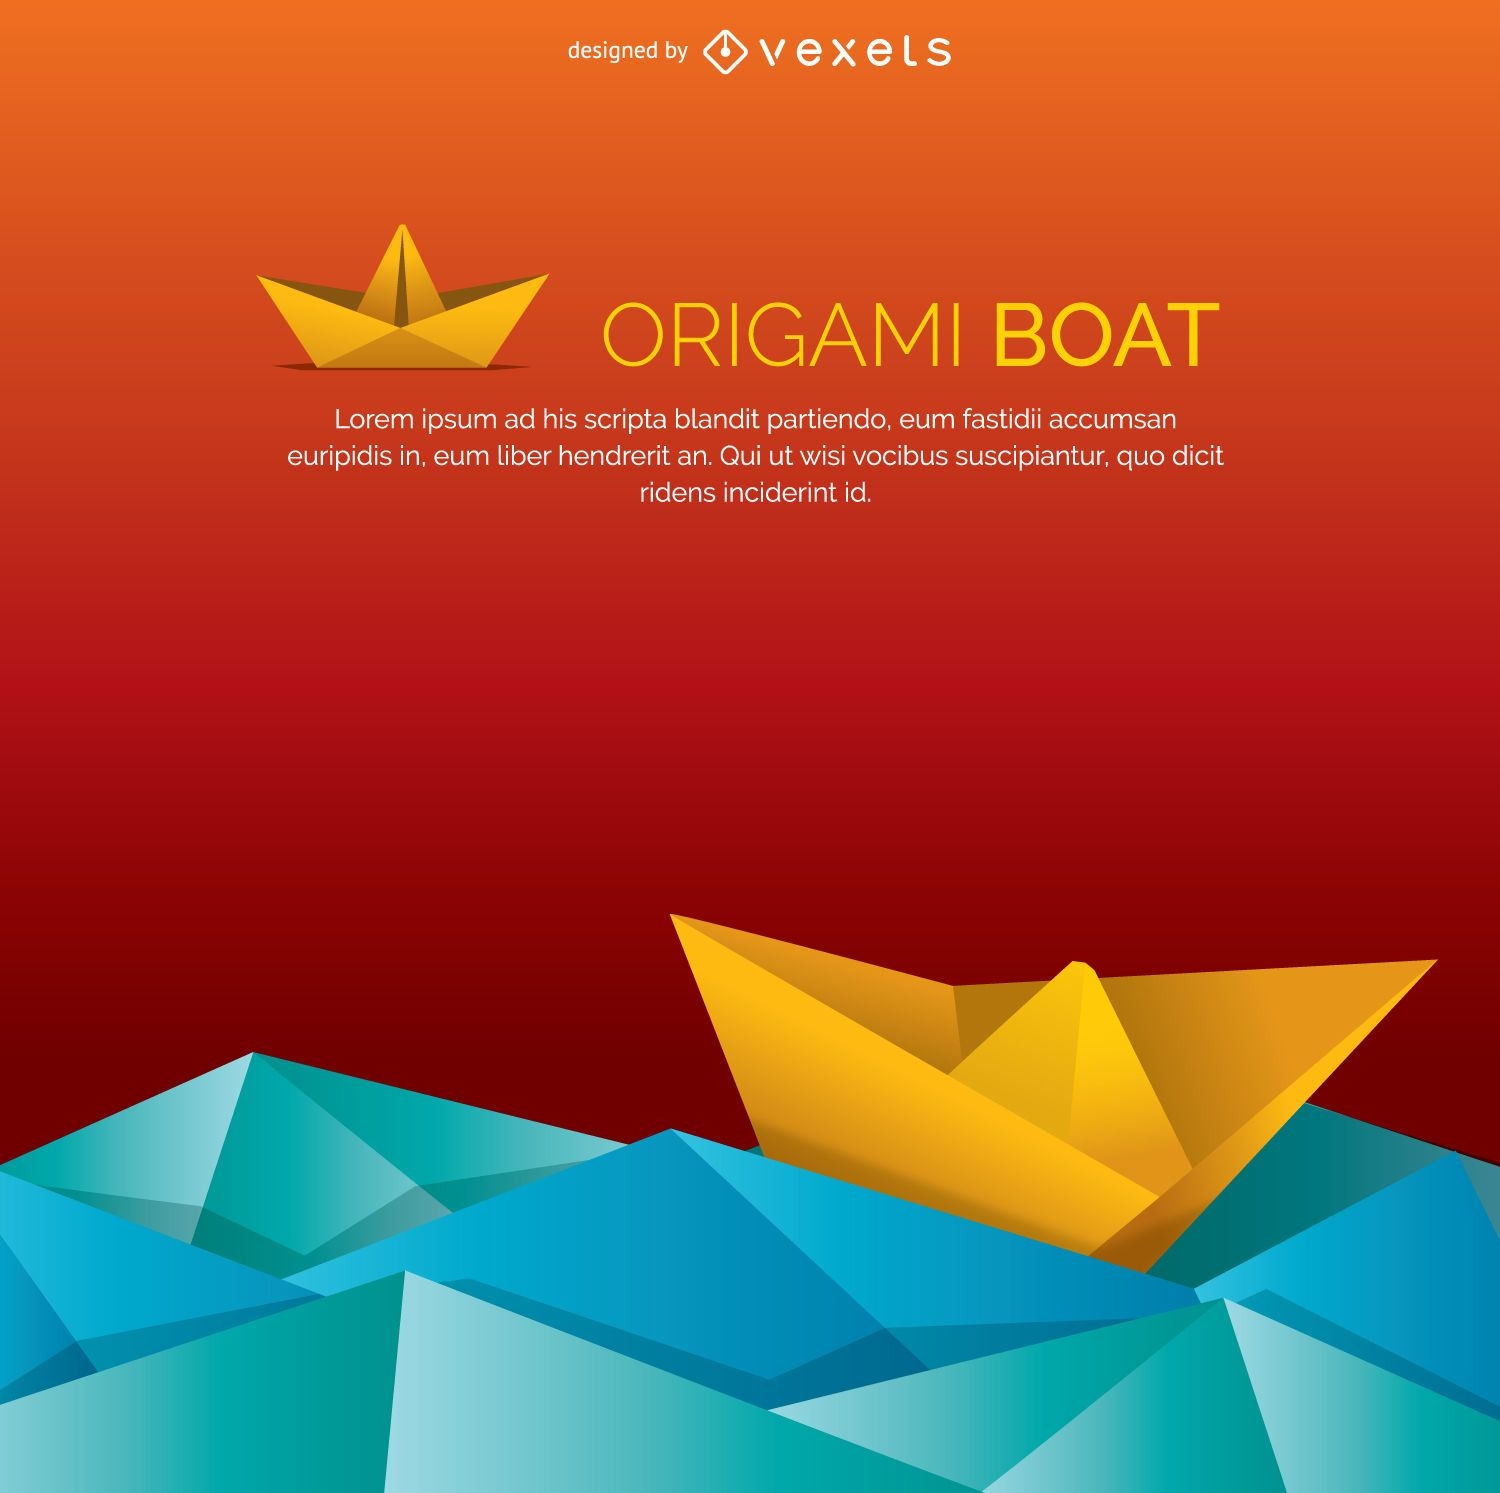 Barco de Origami e água